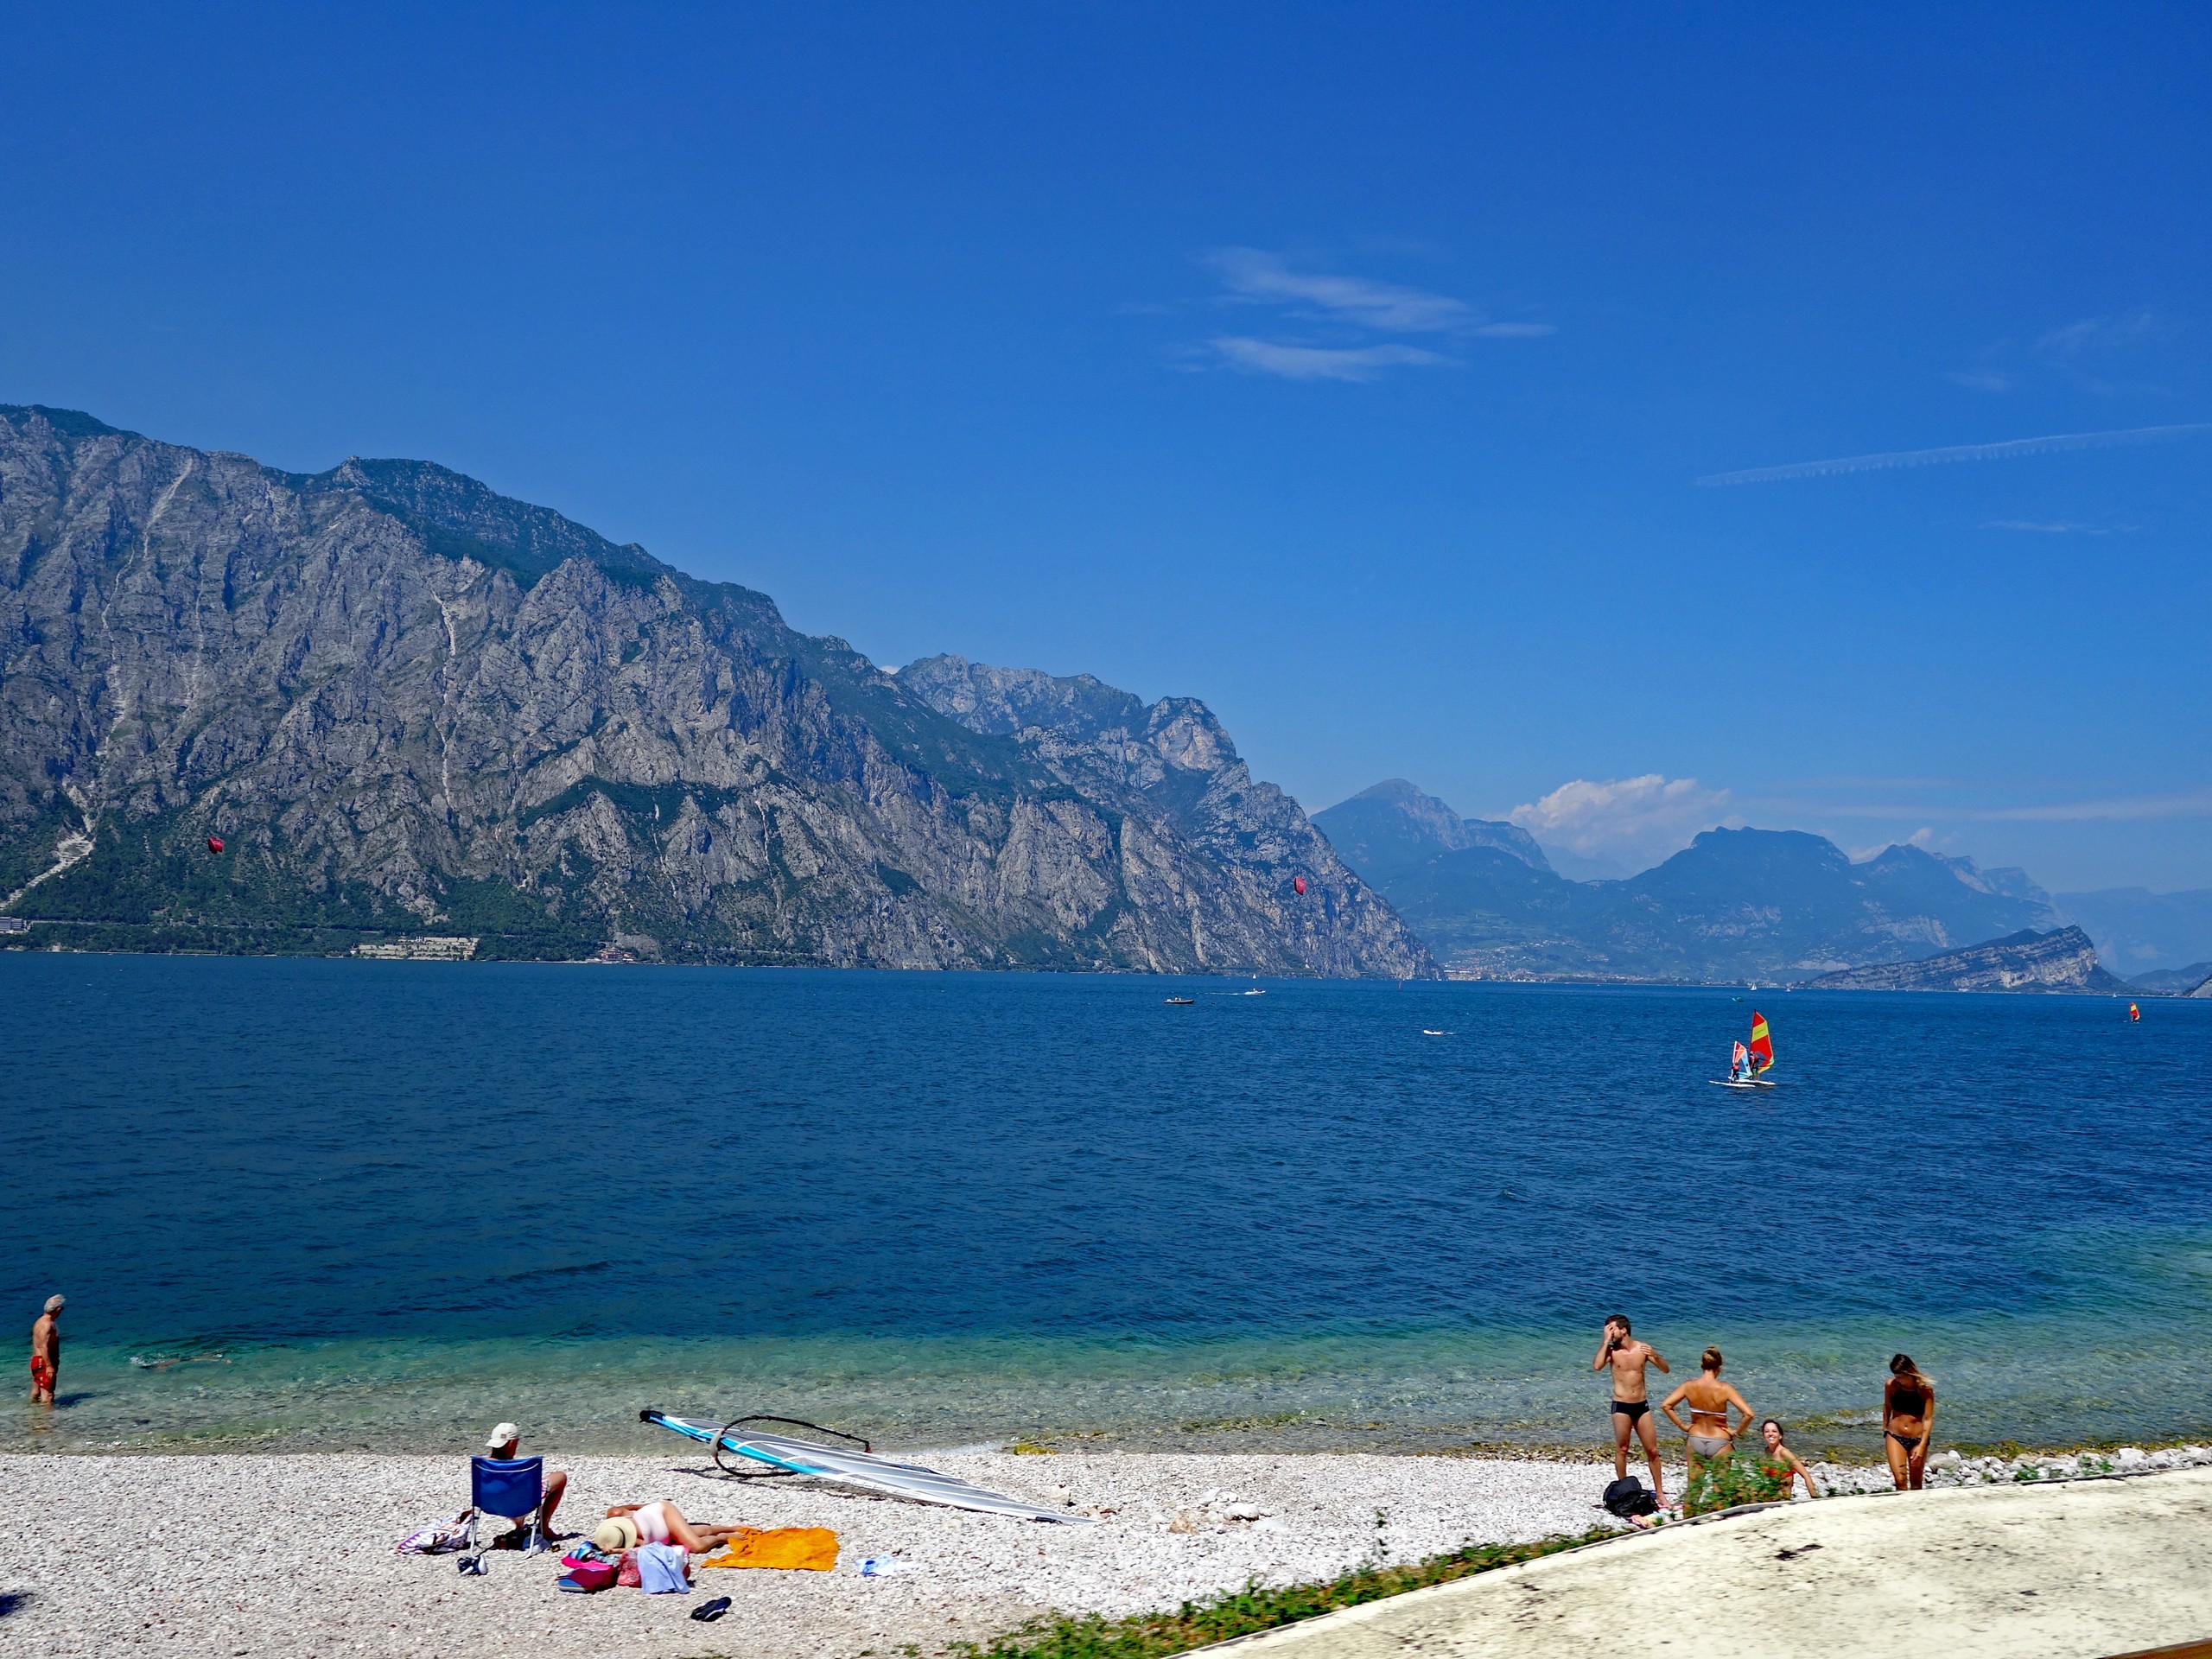 Beautiful lake in South Tyrol